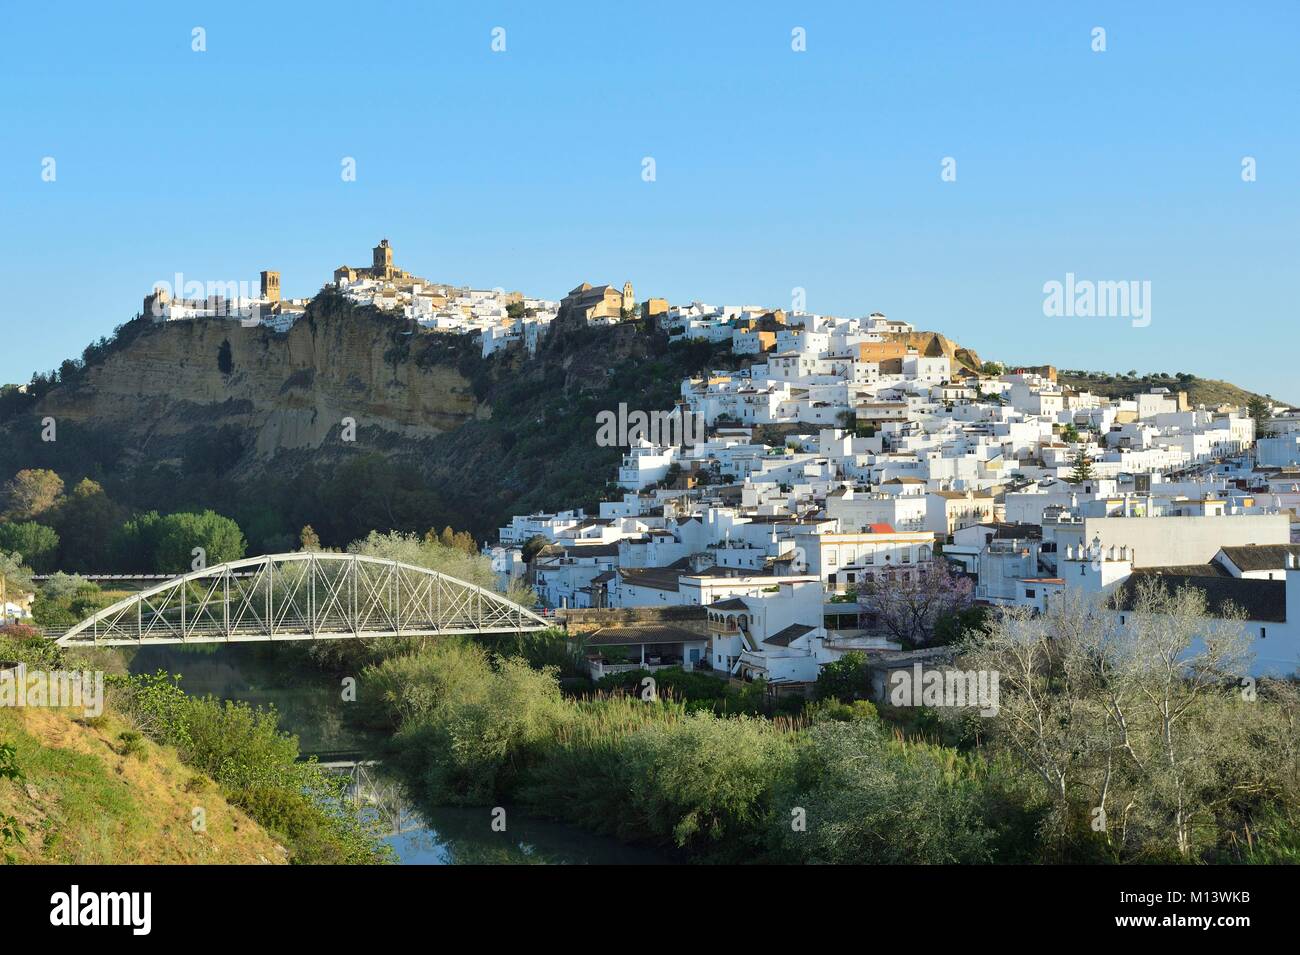 Spain, Andalusia, white village of Arcos de la Frontera Stock Photo